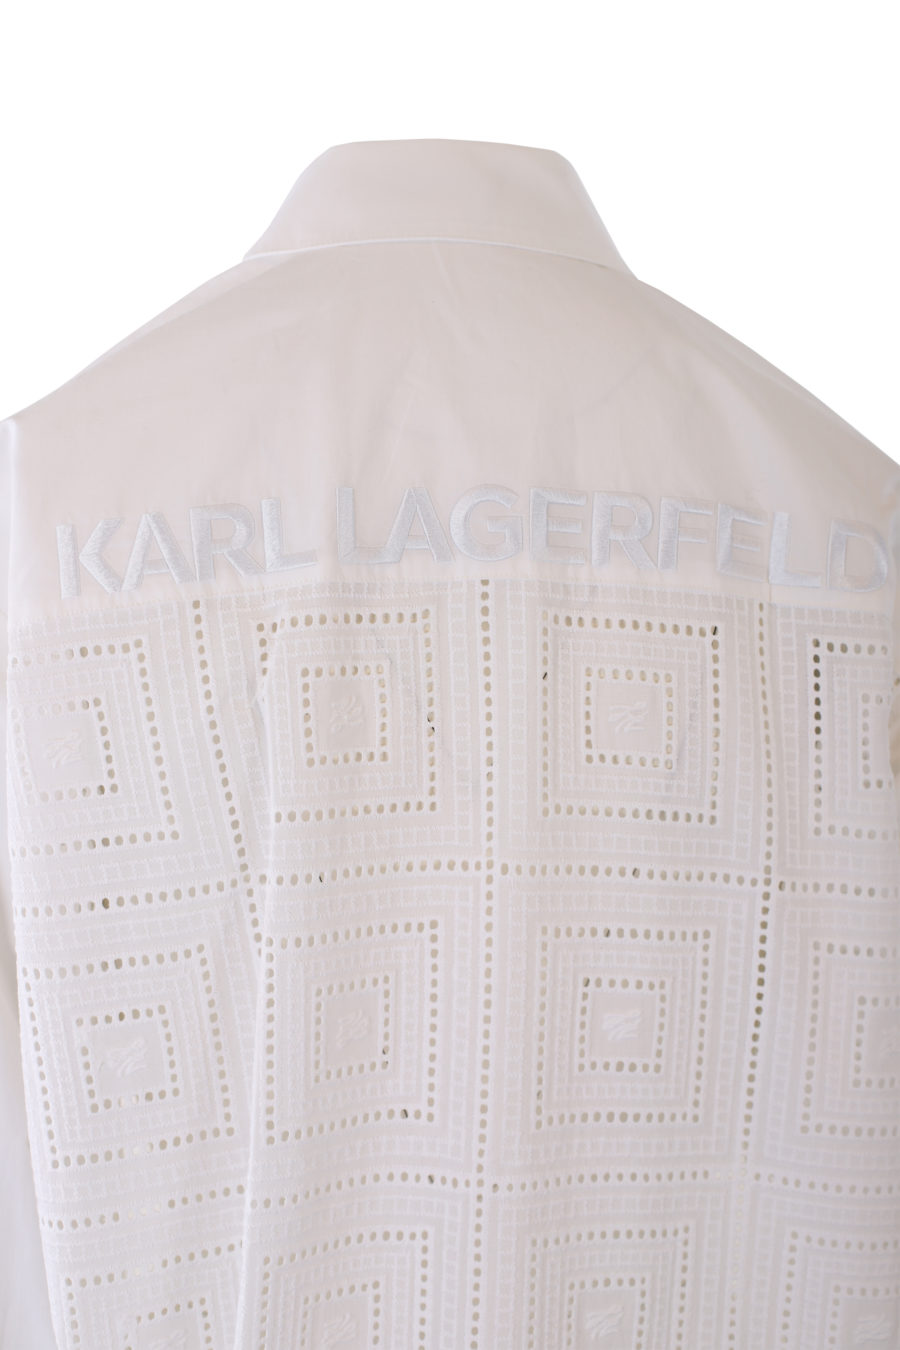 Camisa blanca larga con logo y detalles bordados - IMG 1248